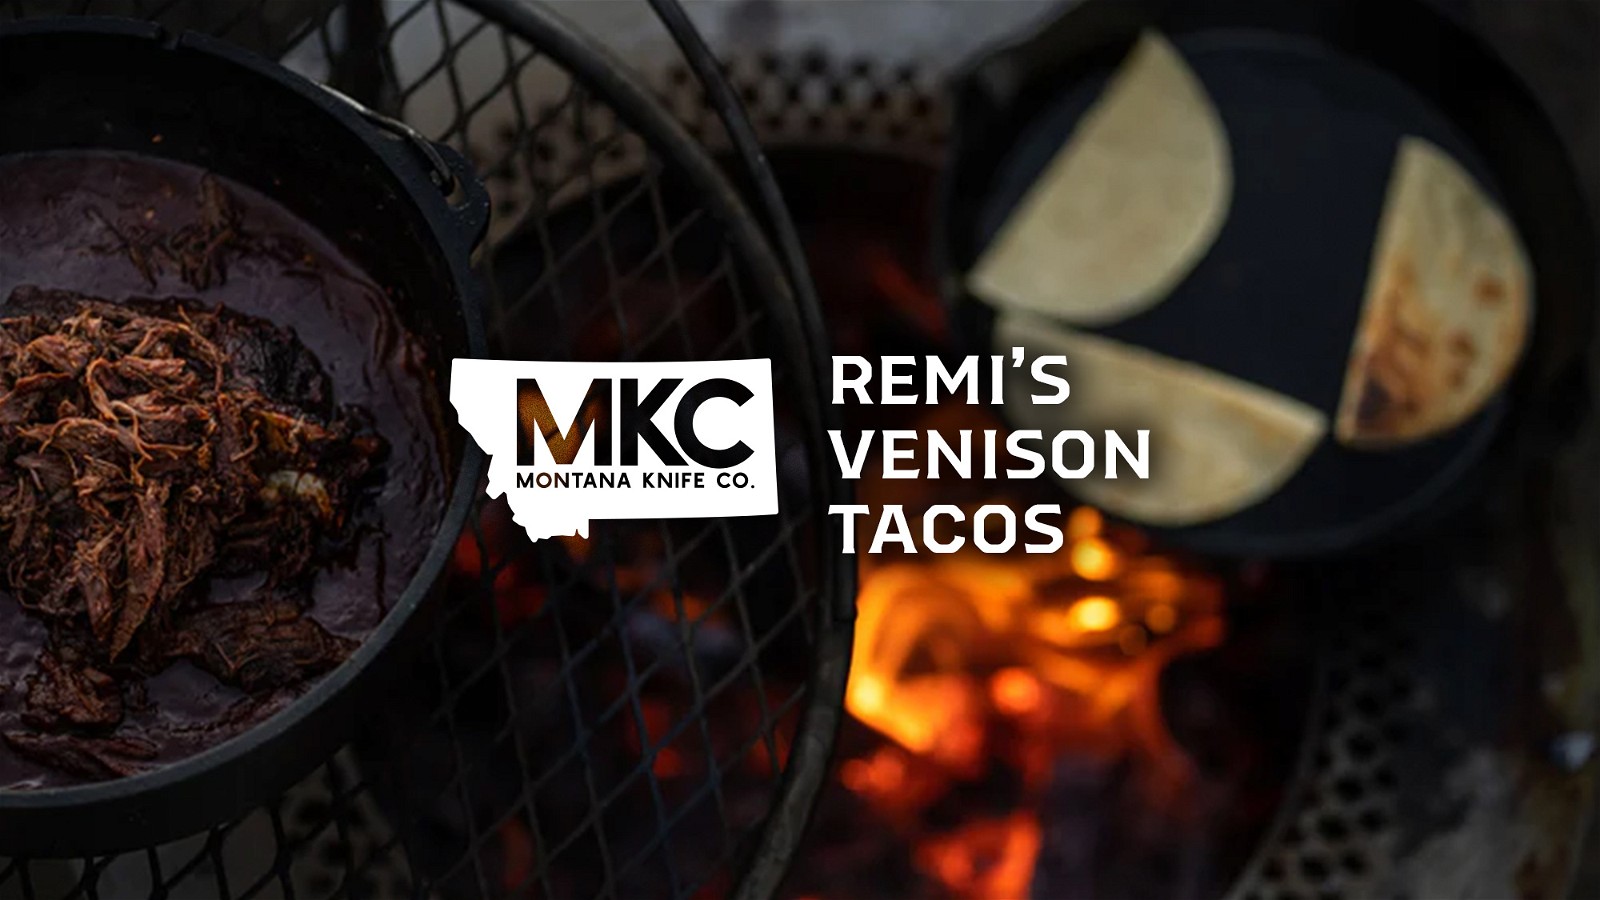 Image of Remi’s Venison Tacos